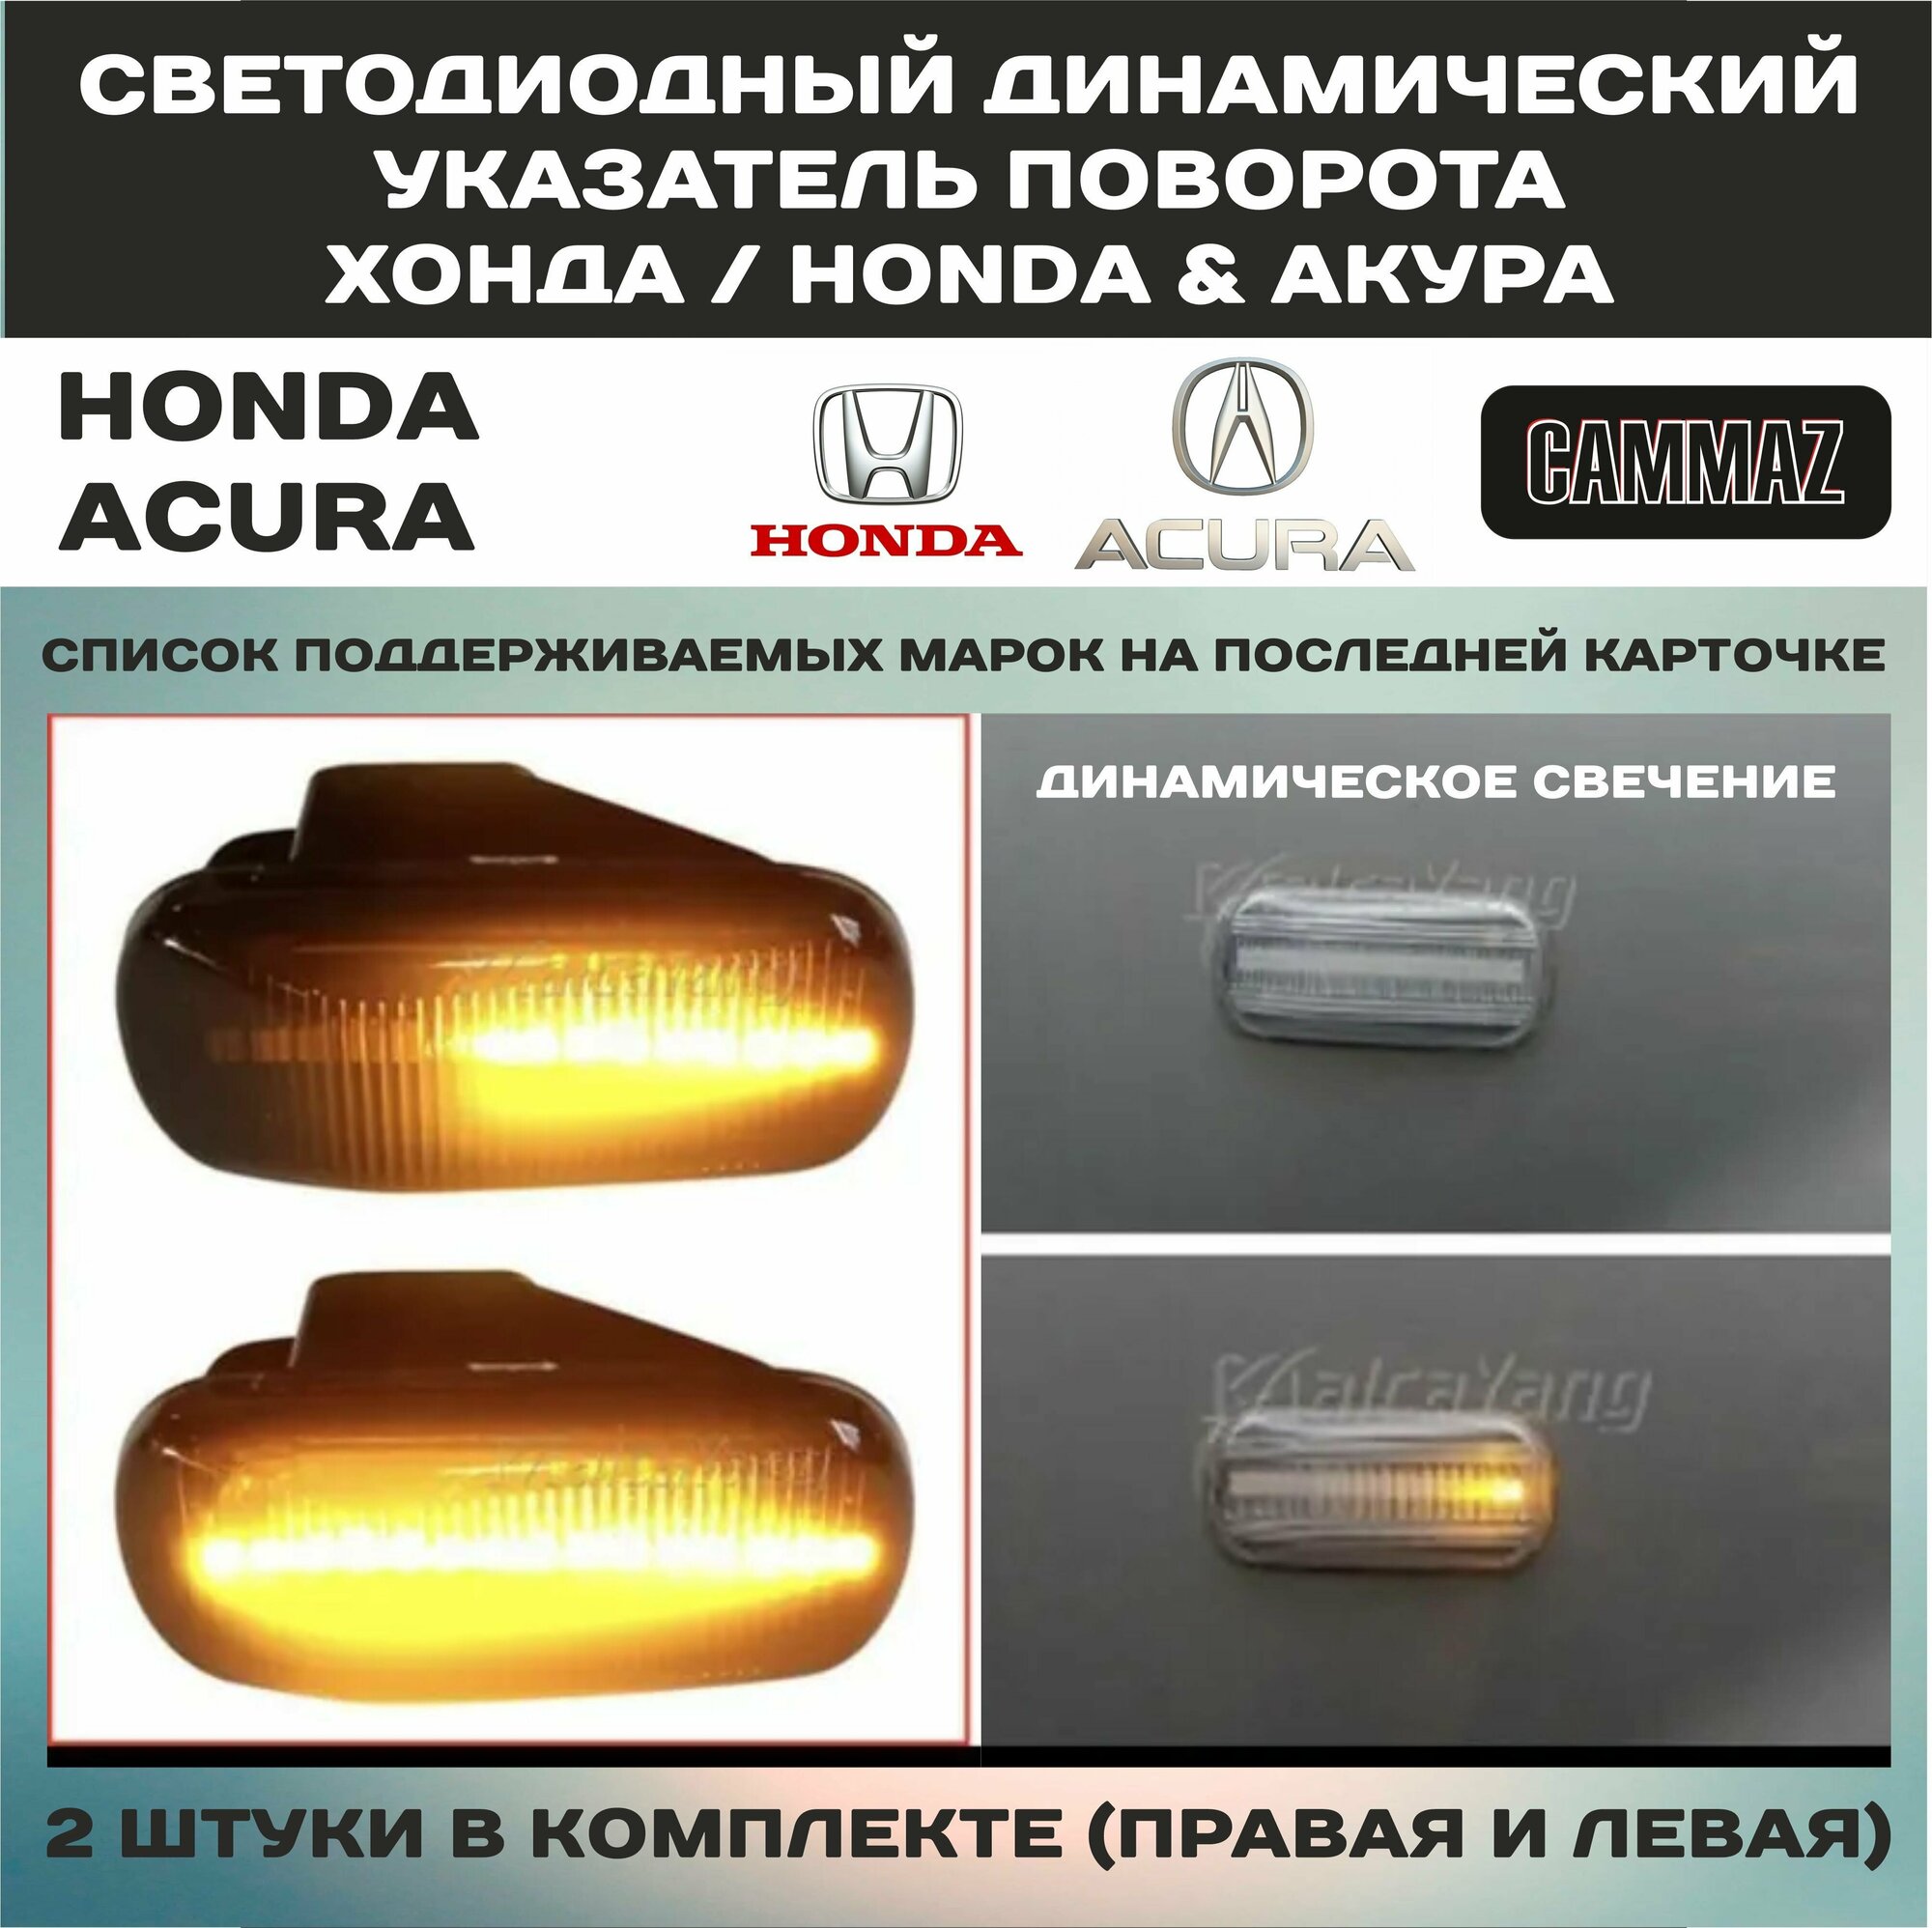 Светодиодный динамический указатель поворота хонда / HONDA & акура / ACURA